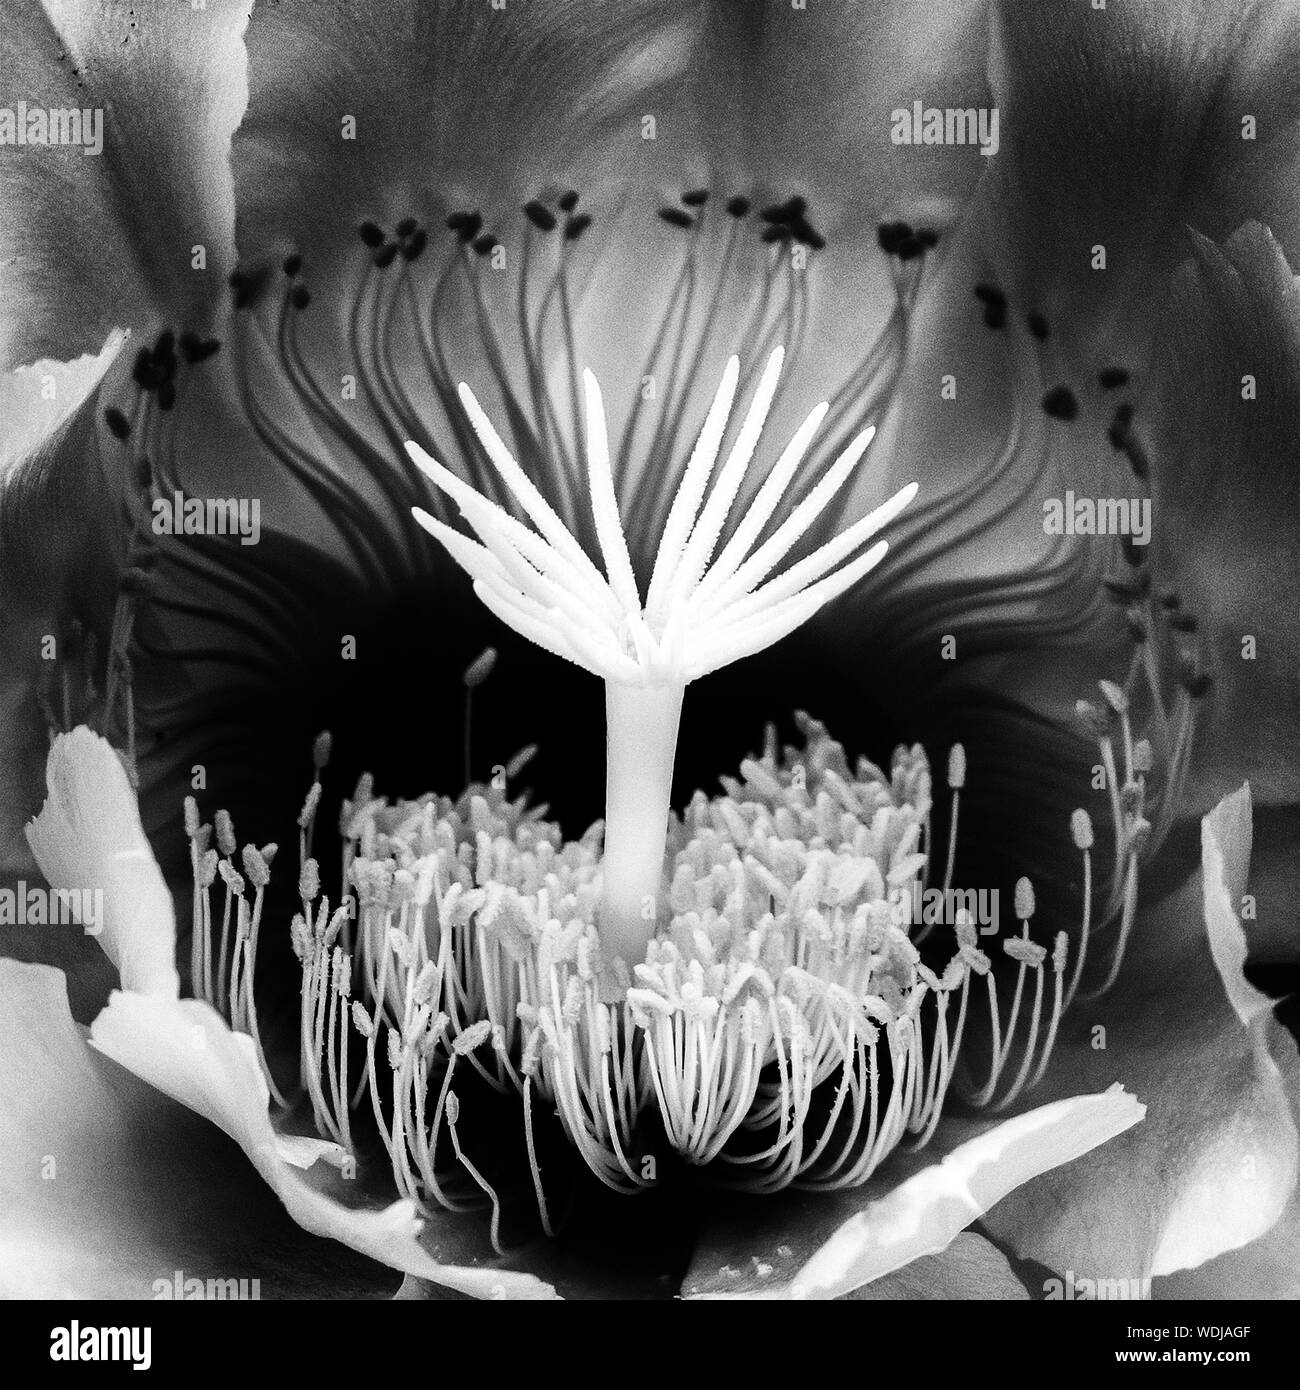 Detalle de macro centro blanco y negro de la noche florece cactus flower. Un rico diseño en la naturaleza de cerca. Foto de stock